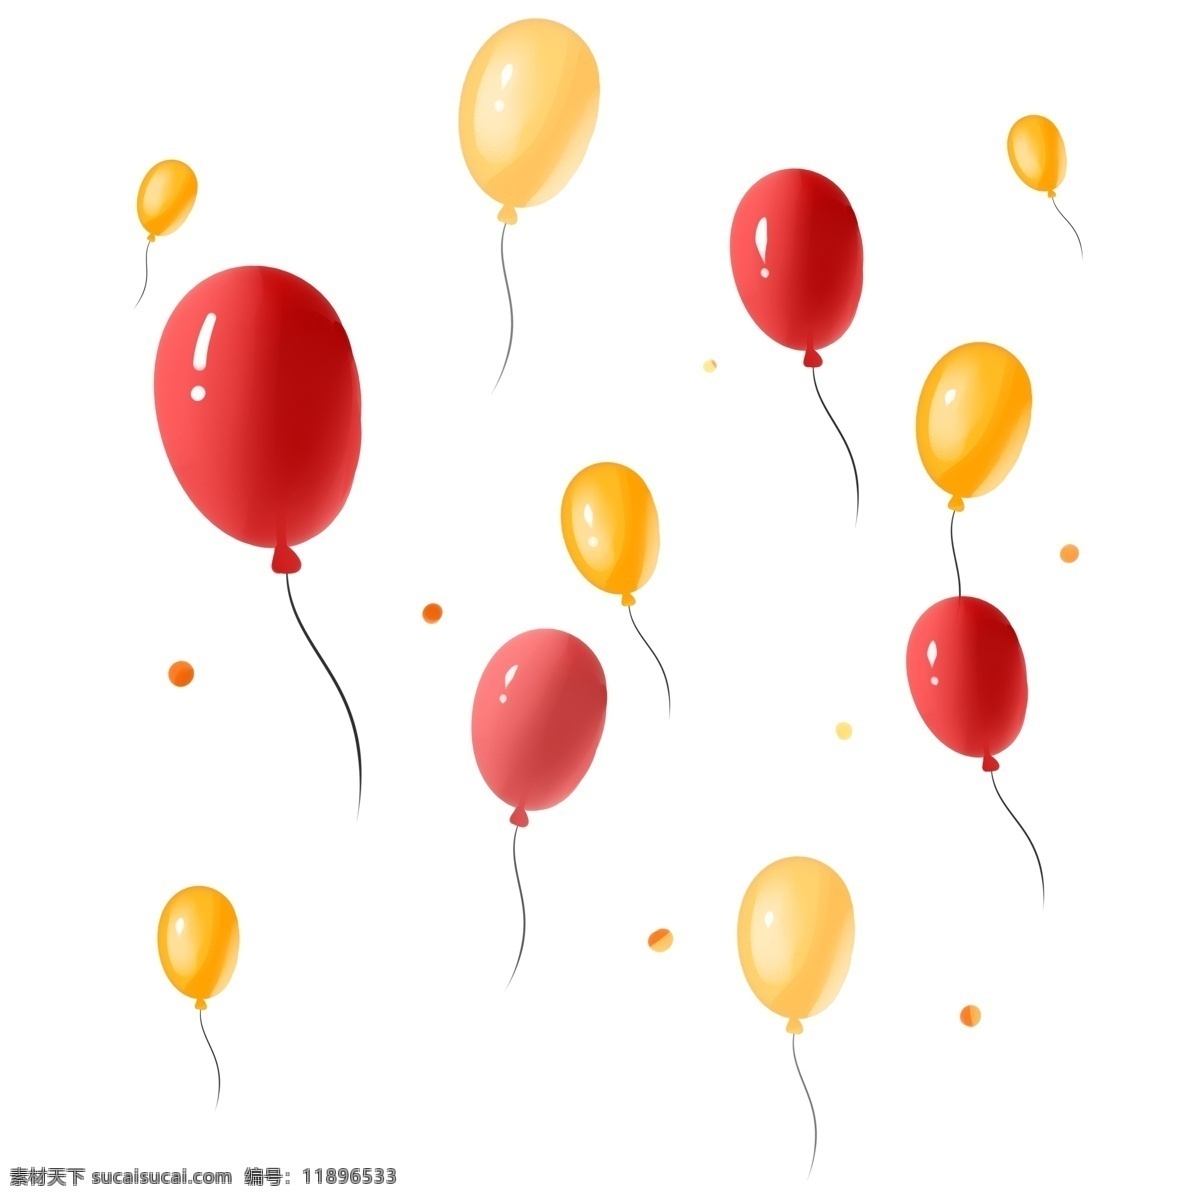 商用 手绘 扁平化 风格 漂浮 气球 元素 海报素材 手绘风格 漂浮气球